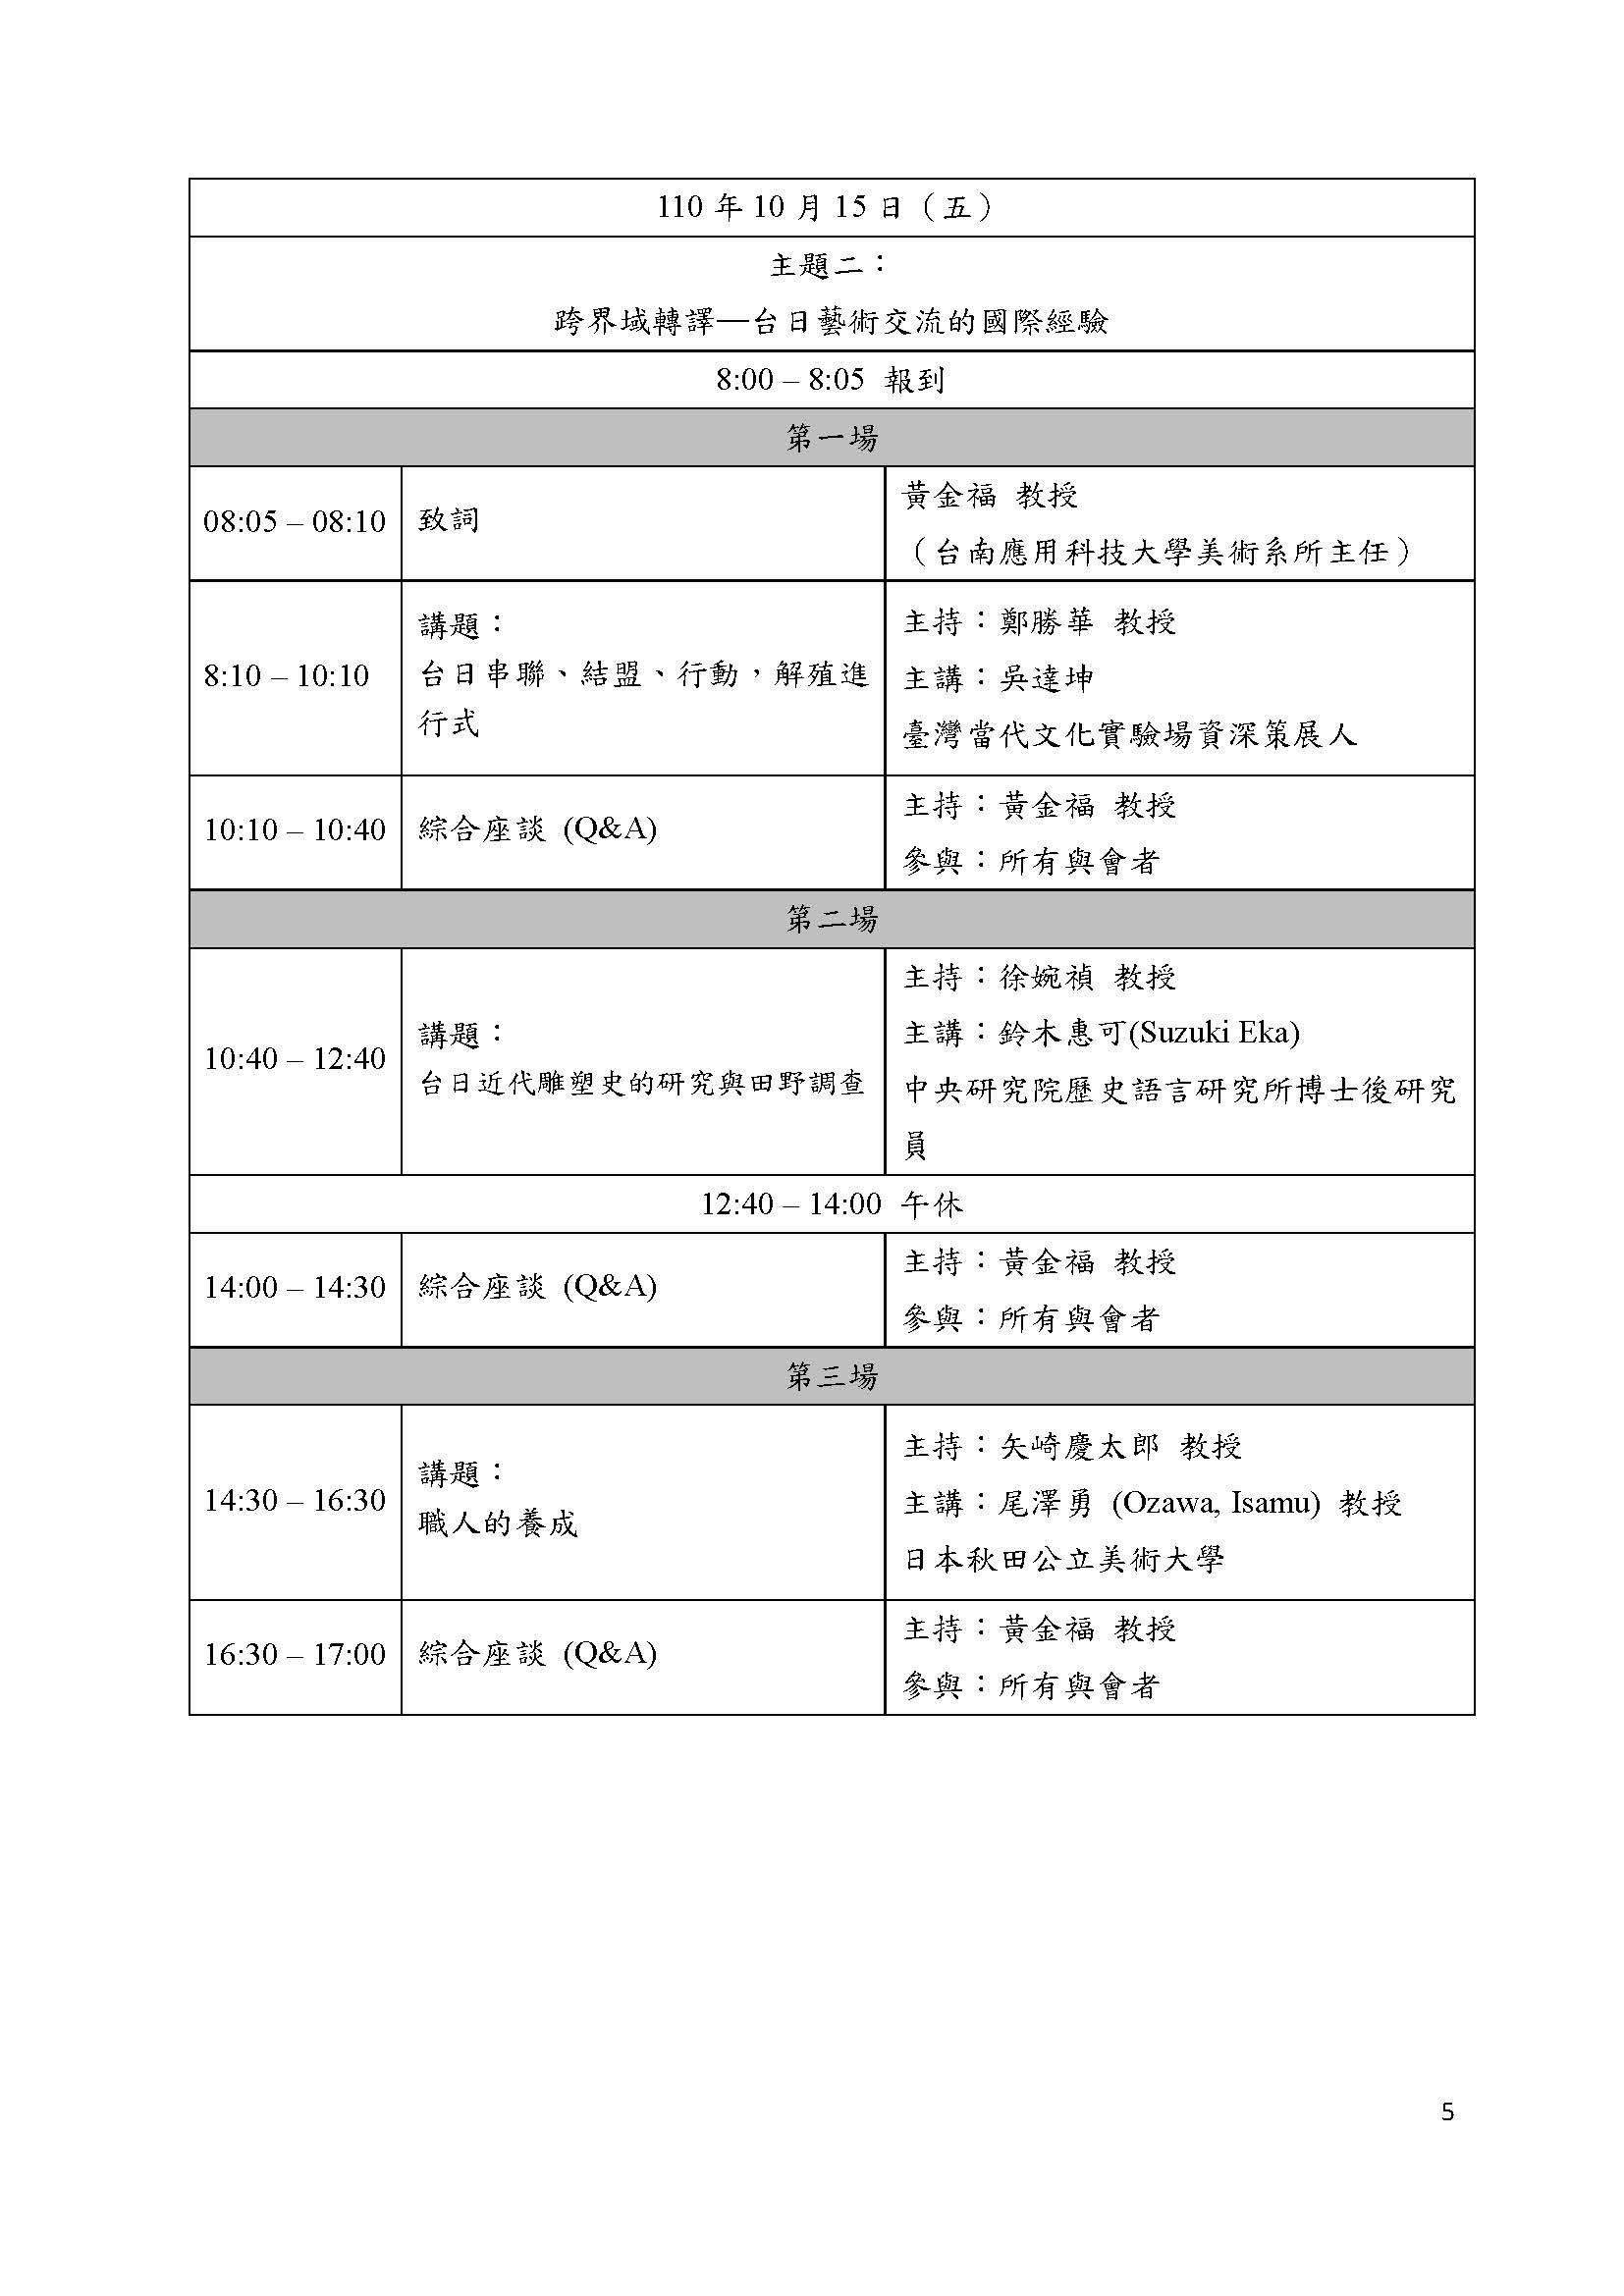 南應大美術系2021台日研討會議程表1015